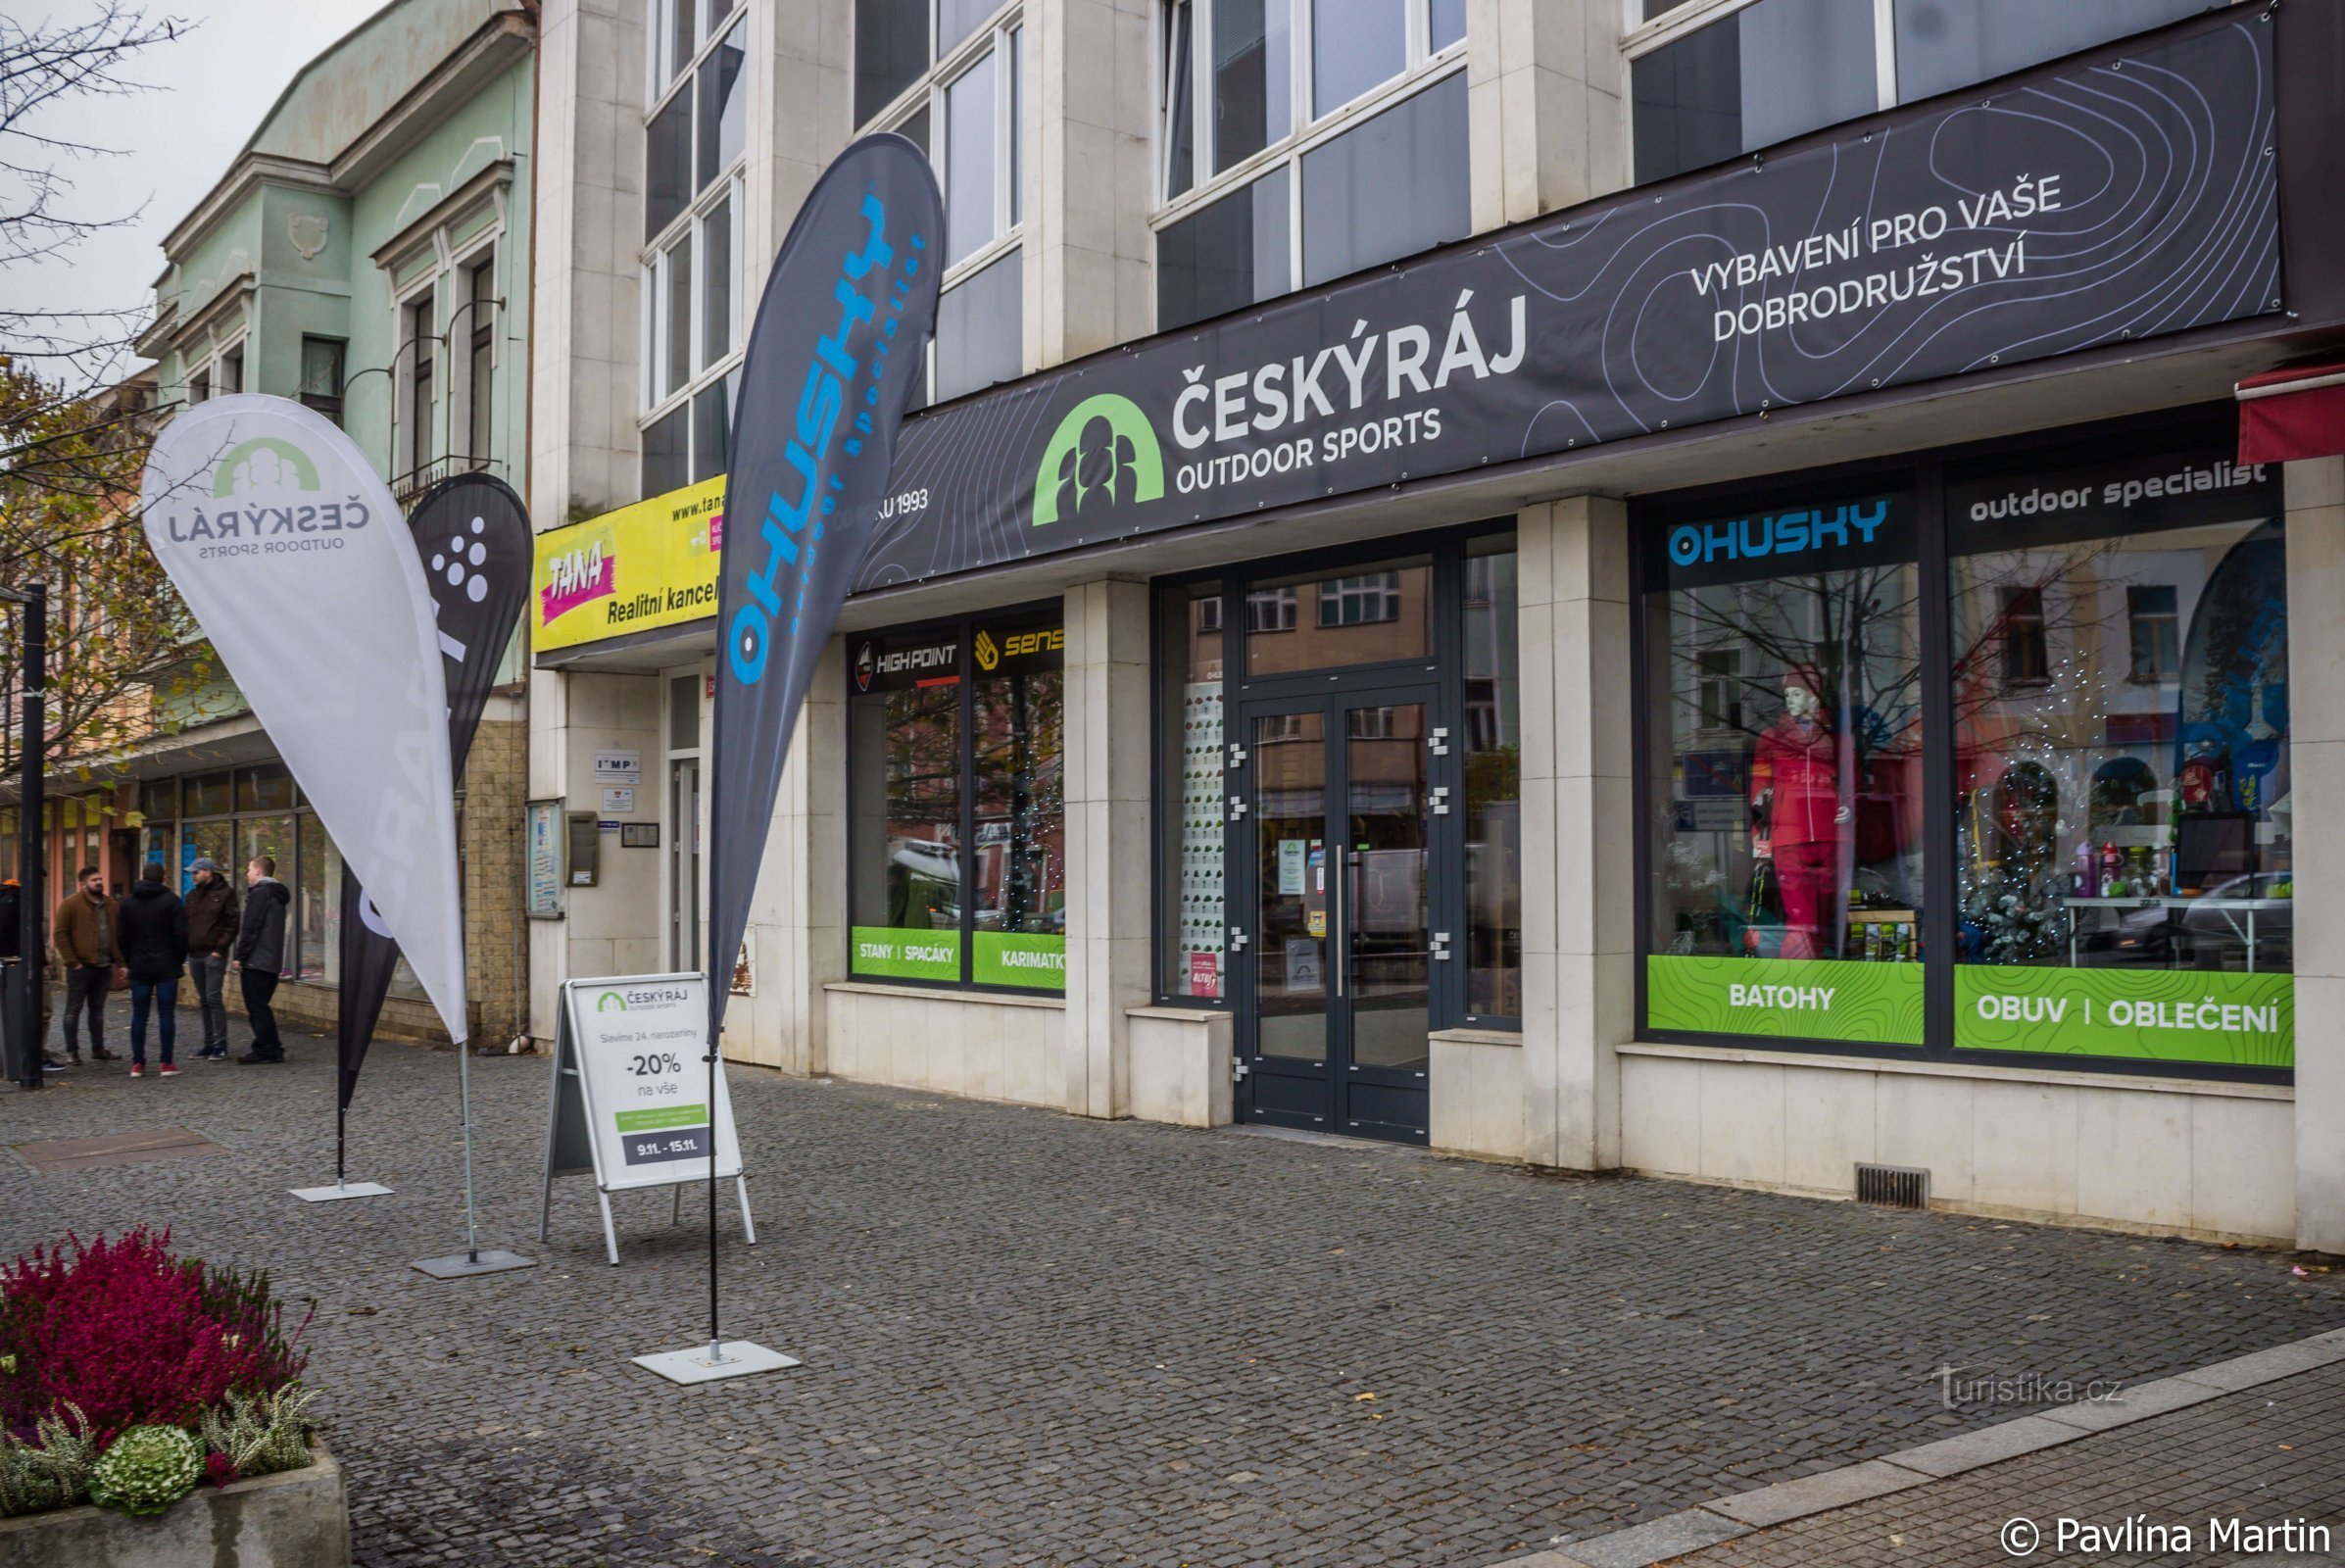 Il negozio all'aperto Český raj festeggia 25 anni e puoi farlo anche tu con uno sconto del 20% su tutto